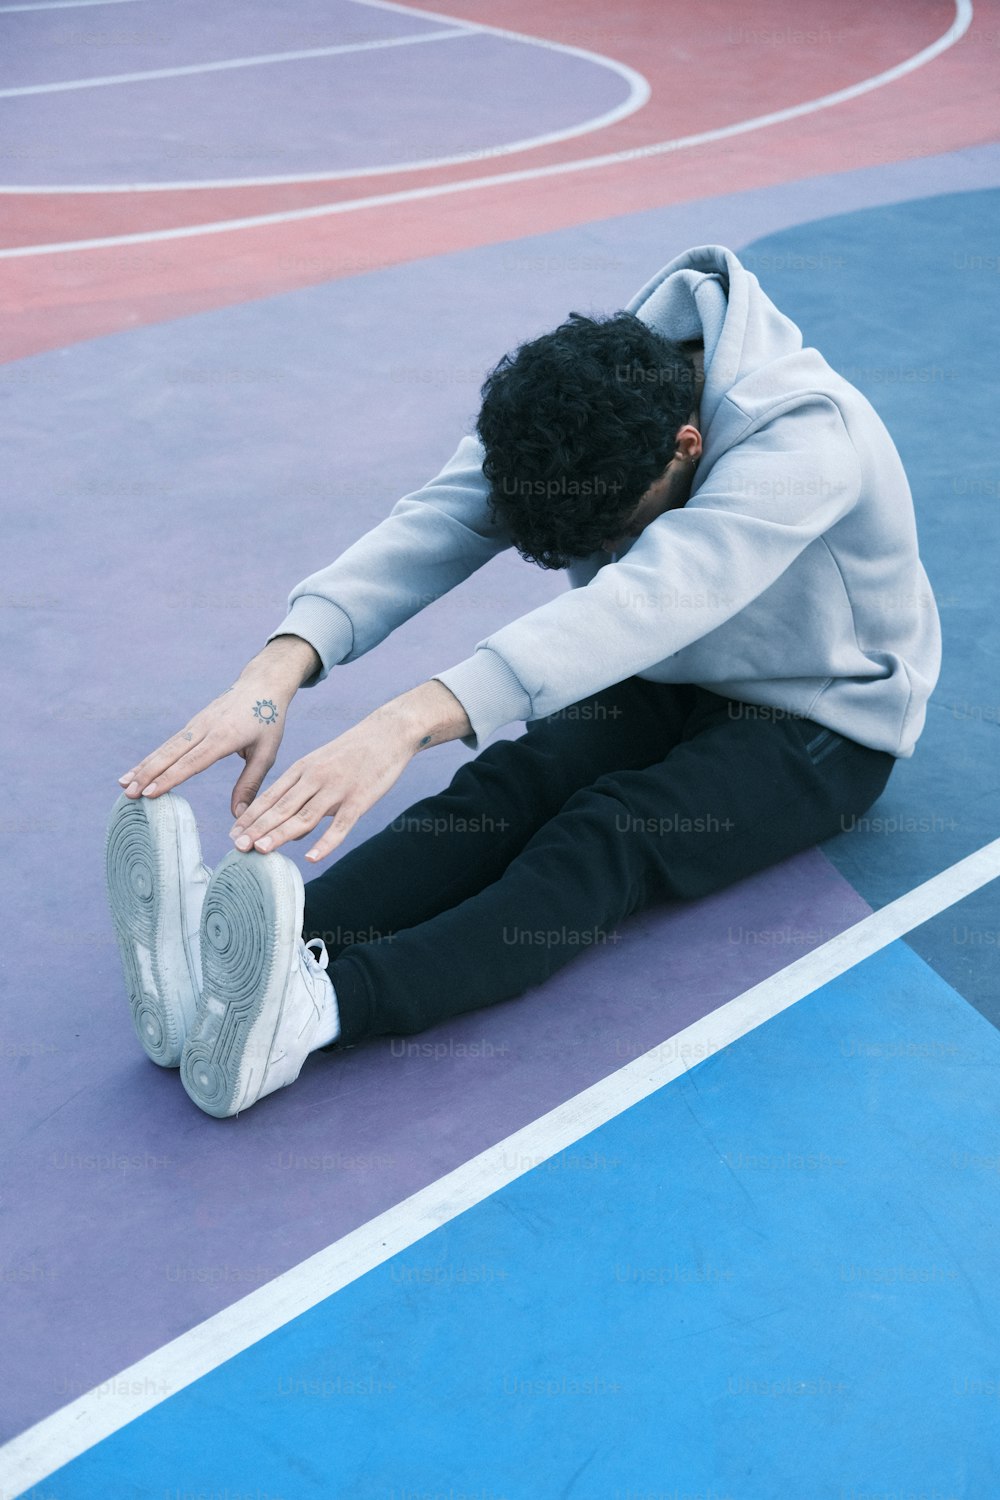 足を地面につけてバスケットボールコートに座っている男性